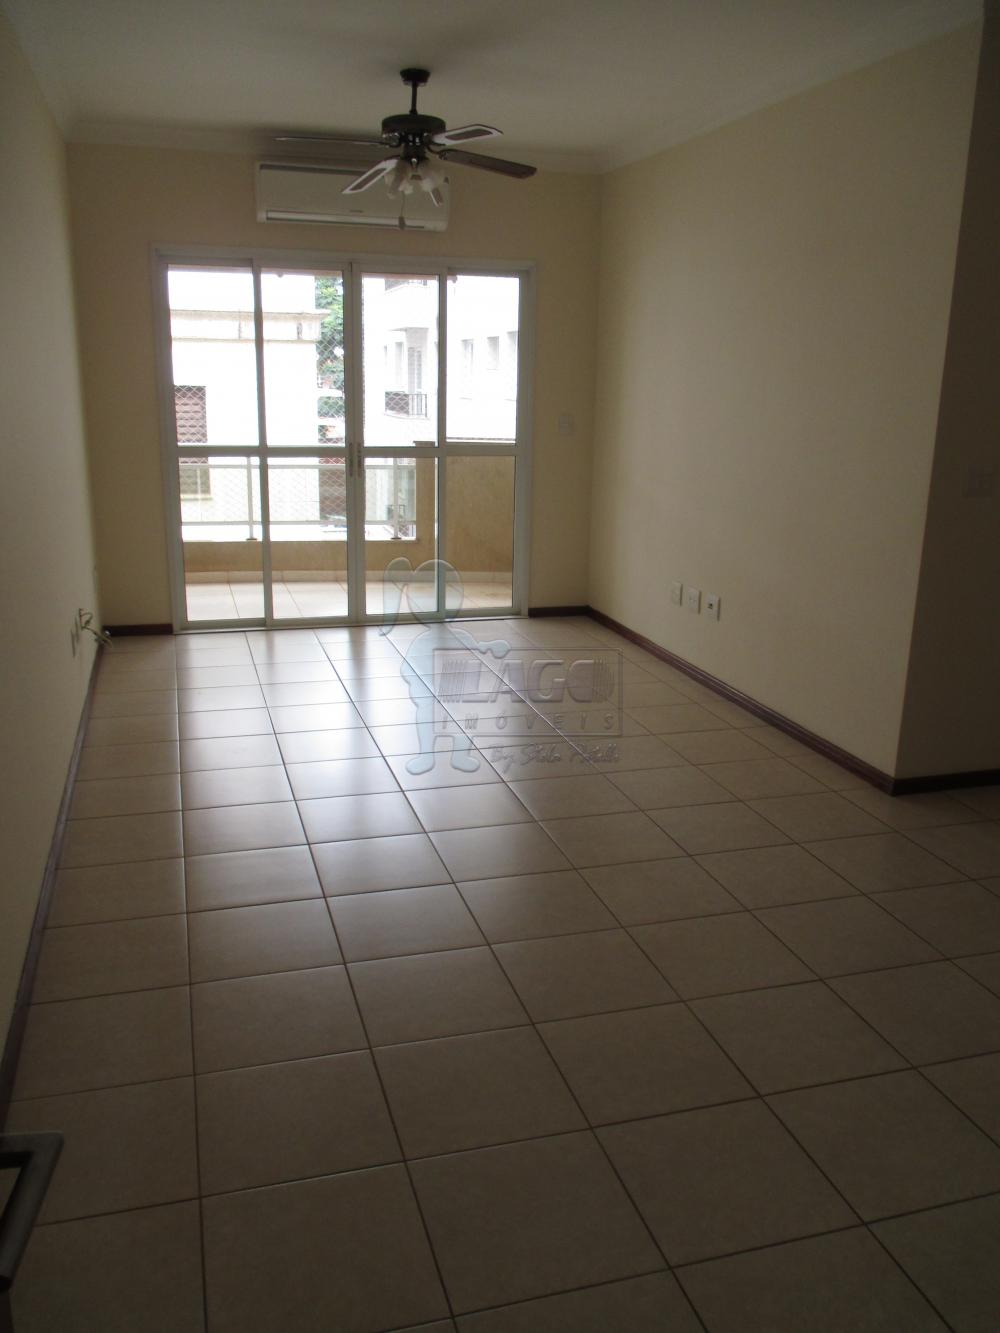 Alugar Apartamentos / Cobertura em Ribeirão Preto R$ 2.500,00 - Foto 1